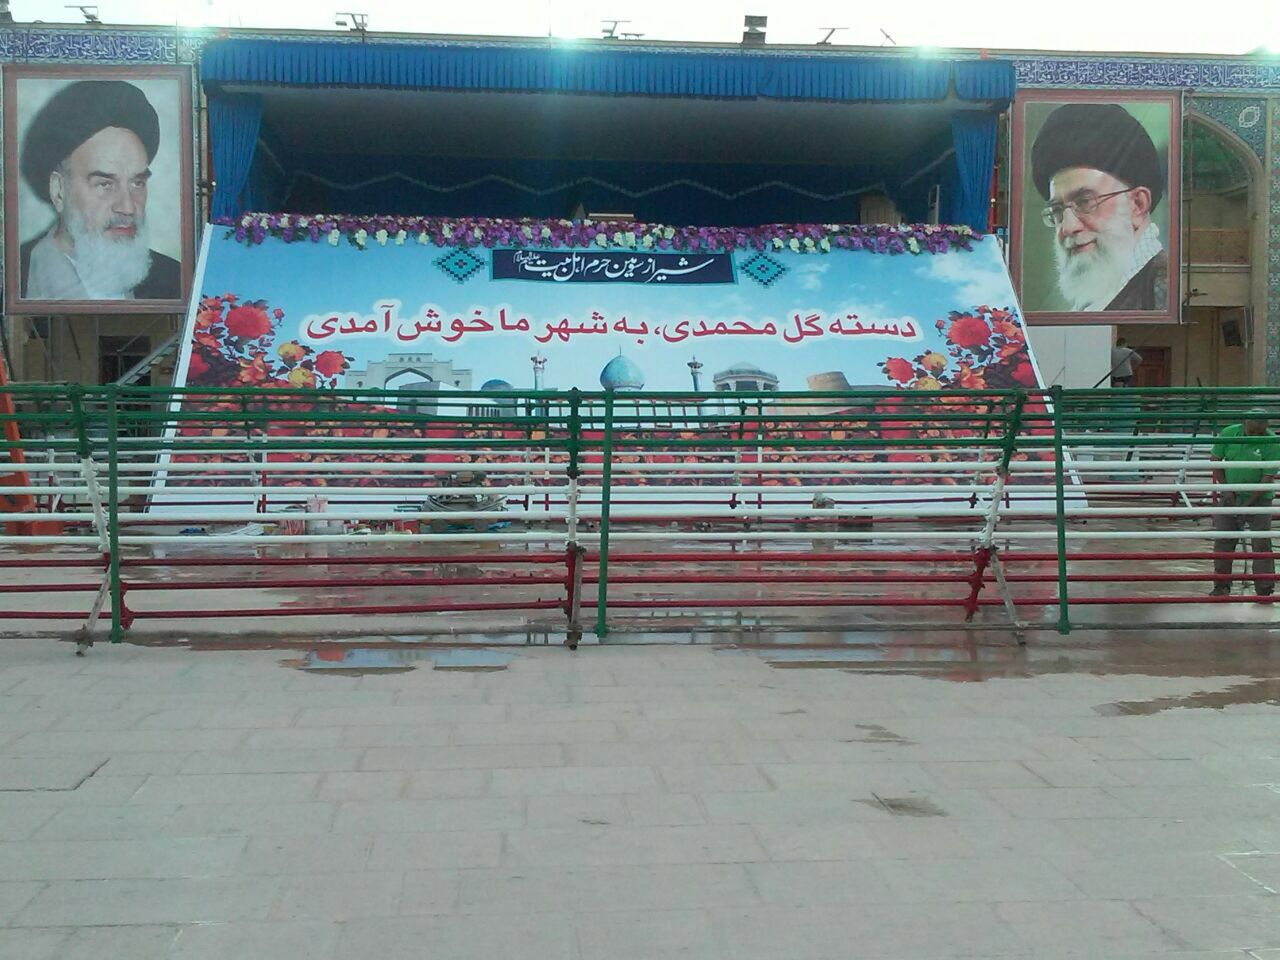 جایگاه سخنرانی روحانی در شیراز آماده شد!+عکس